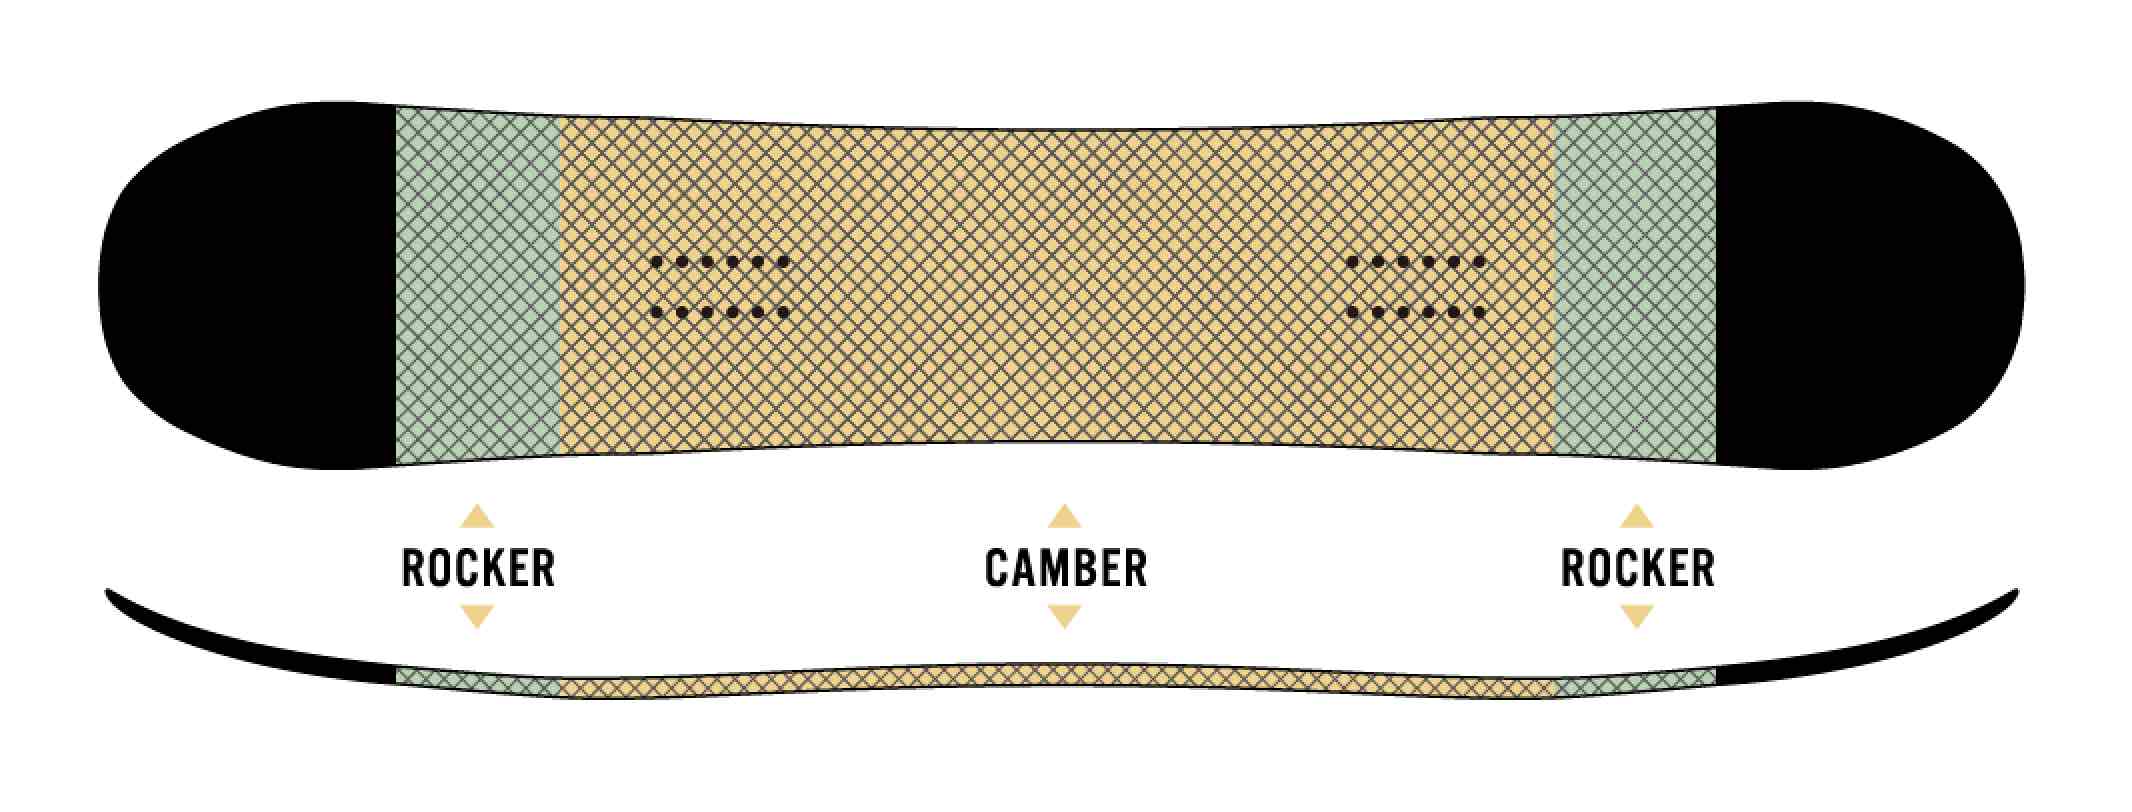 板的中央部分是弧度，CAMROCK在鼻子和尾巴上有一个小摇杆。它具有Camber擅长的锋利边缘，高排斥力，以及摇杆特有的良好机动性。这块板子的特点是可以全面玩的CAMROCK规格。